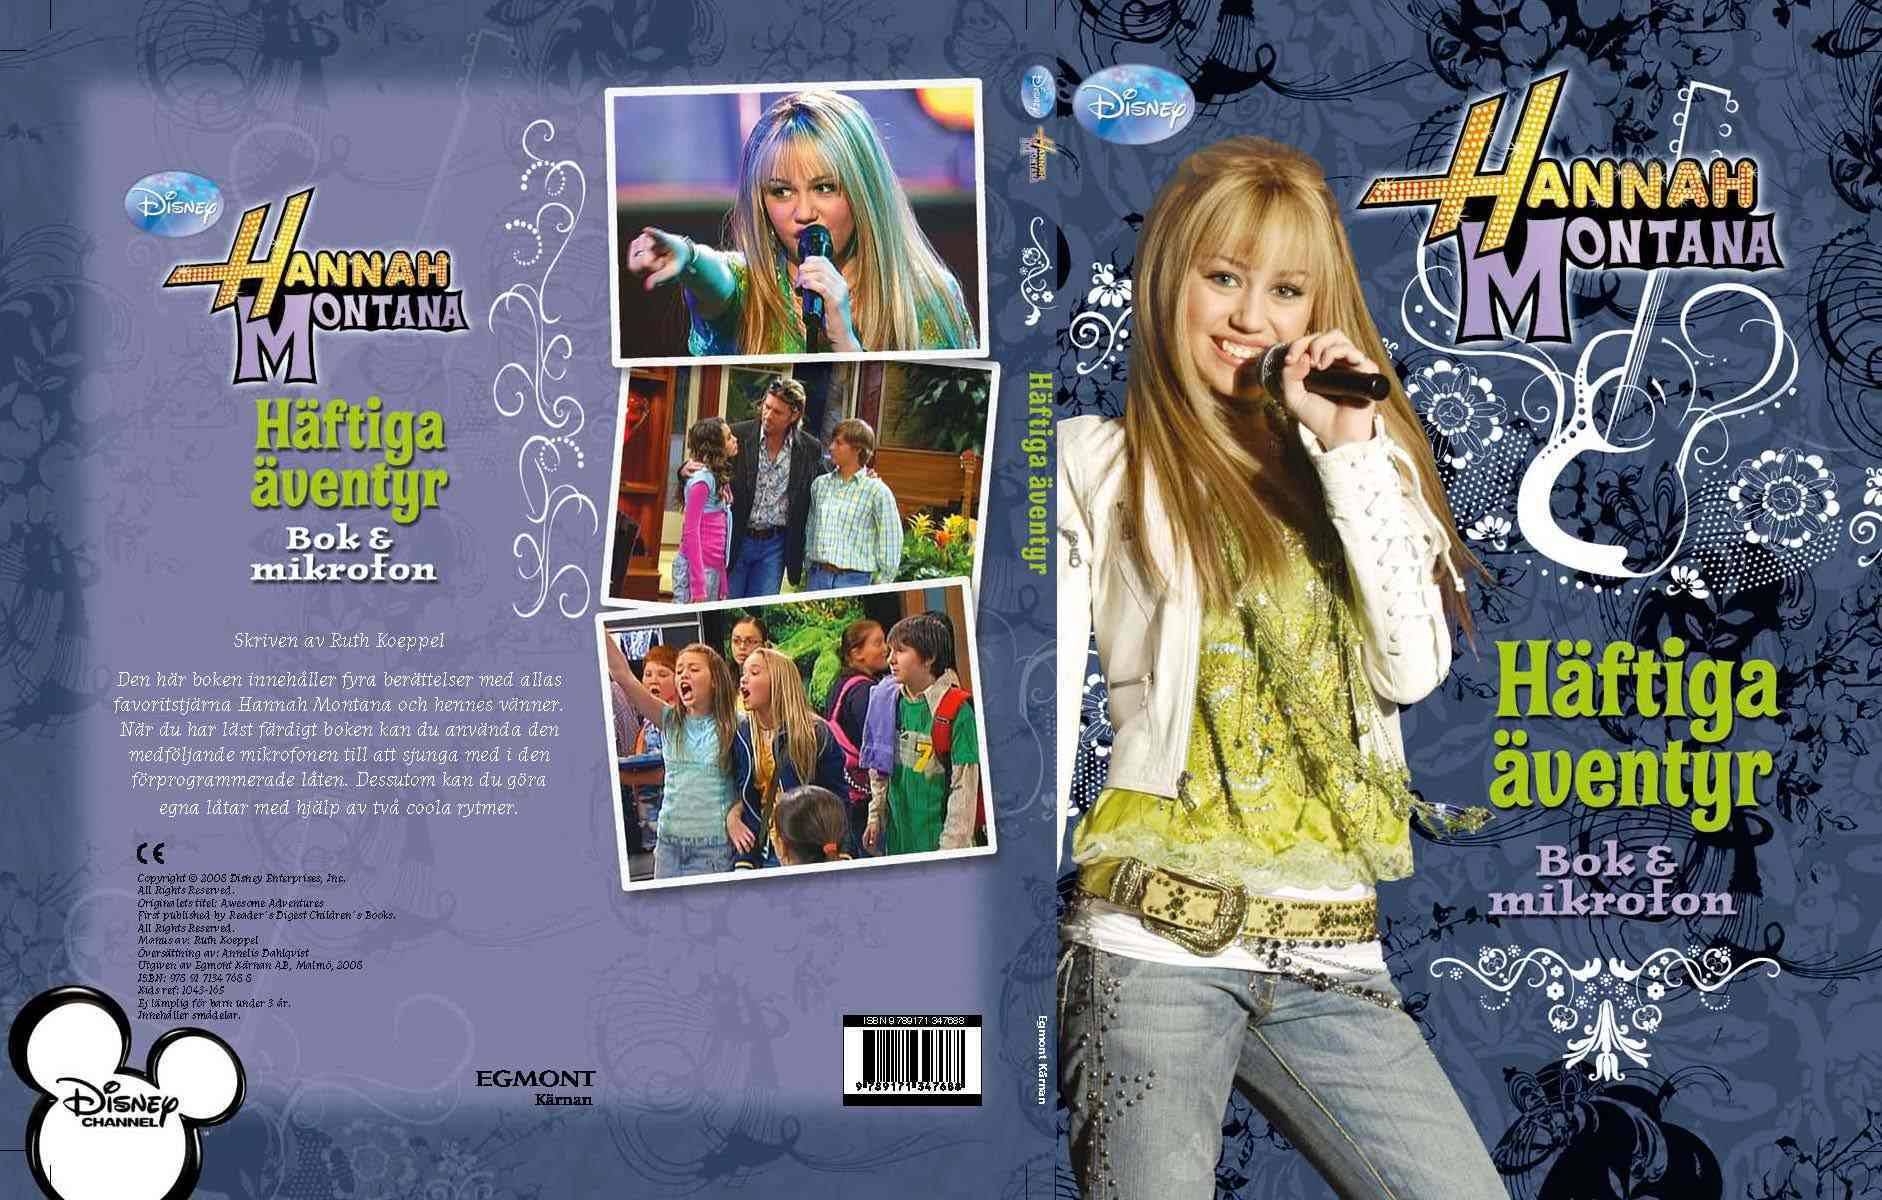 Hannah Montana. Häftiga äventyr bok 6 mikrofon